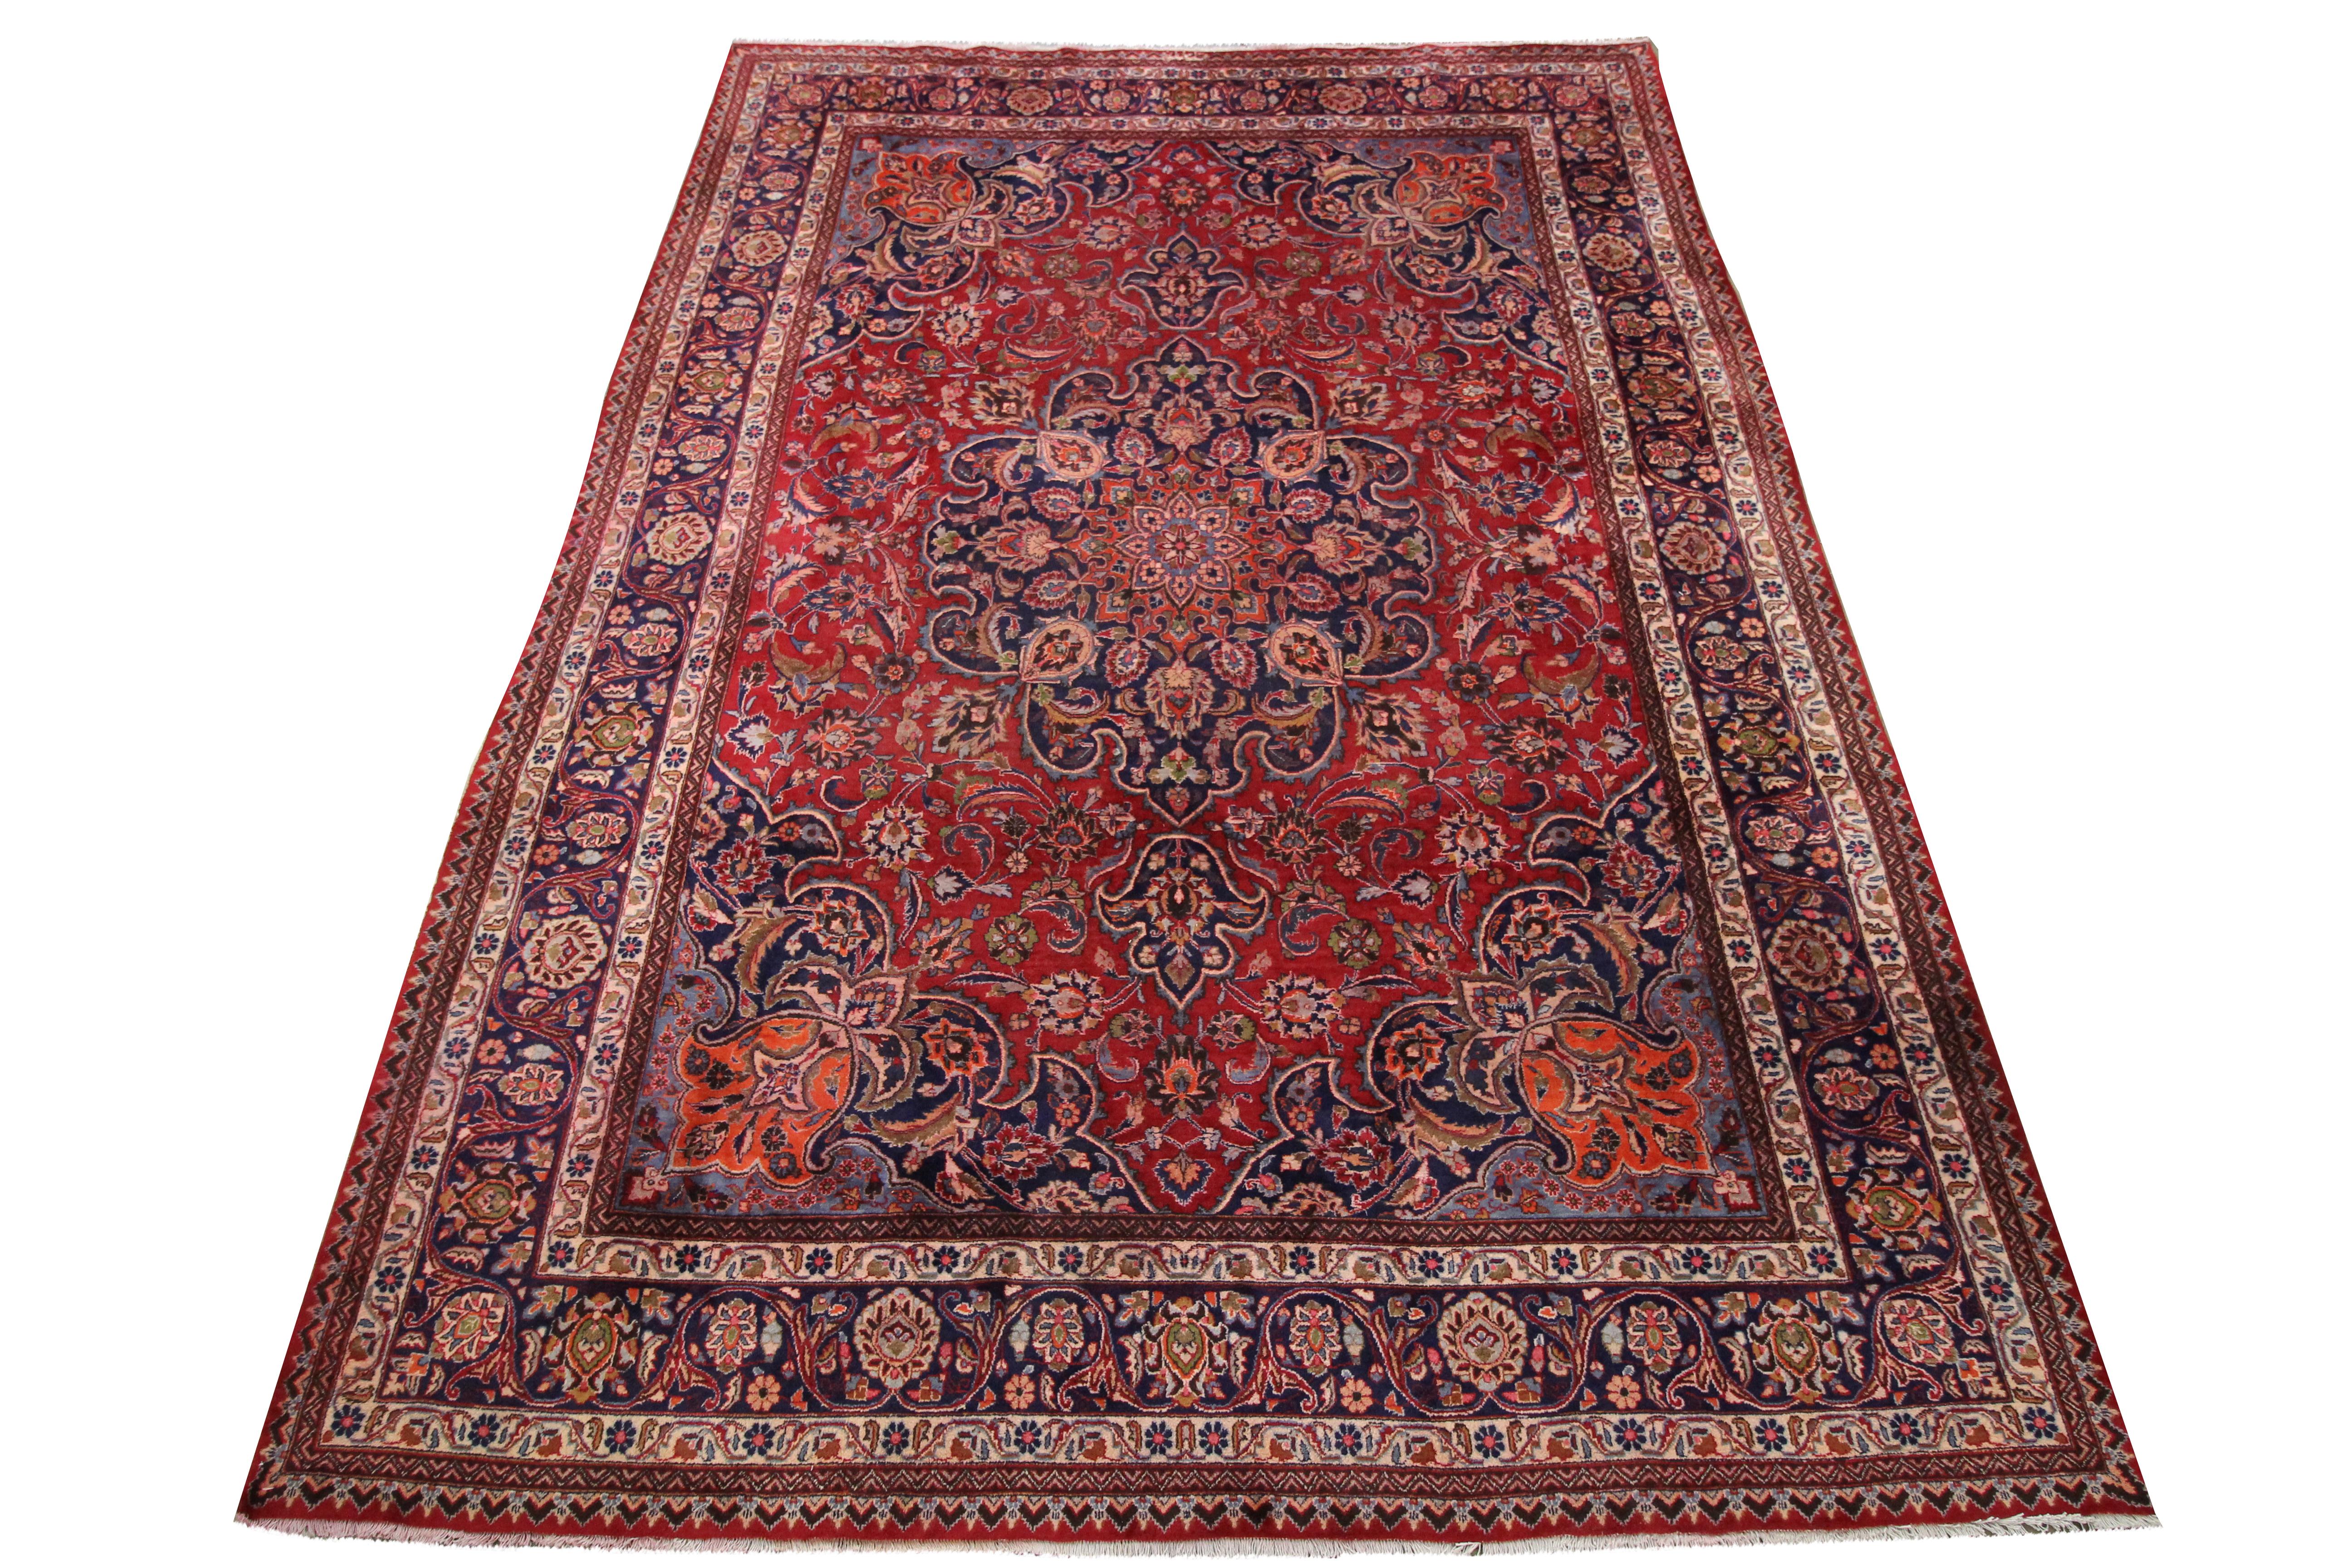 Dieser alte Wollteppich ist ein hervorragendes Beispiel für handgewebte Teppiche aus der Mitte des 20. Jahrhunderts. Das hochdekorative Medaillon in der Mitte ist auf einem satten roten Hintergrund mit blauen, rostfarbenen, cremefarbenen und braunen